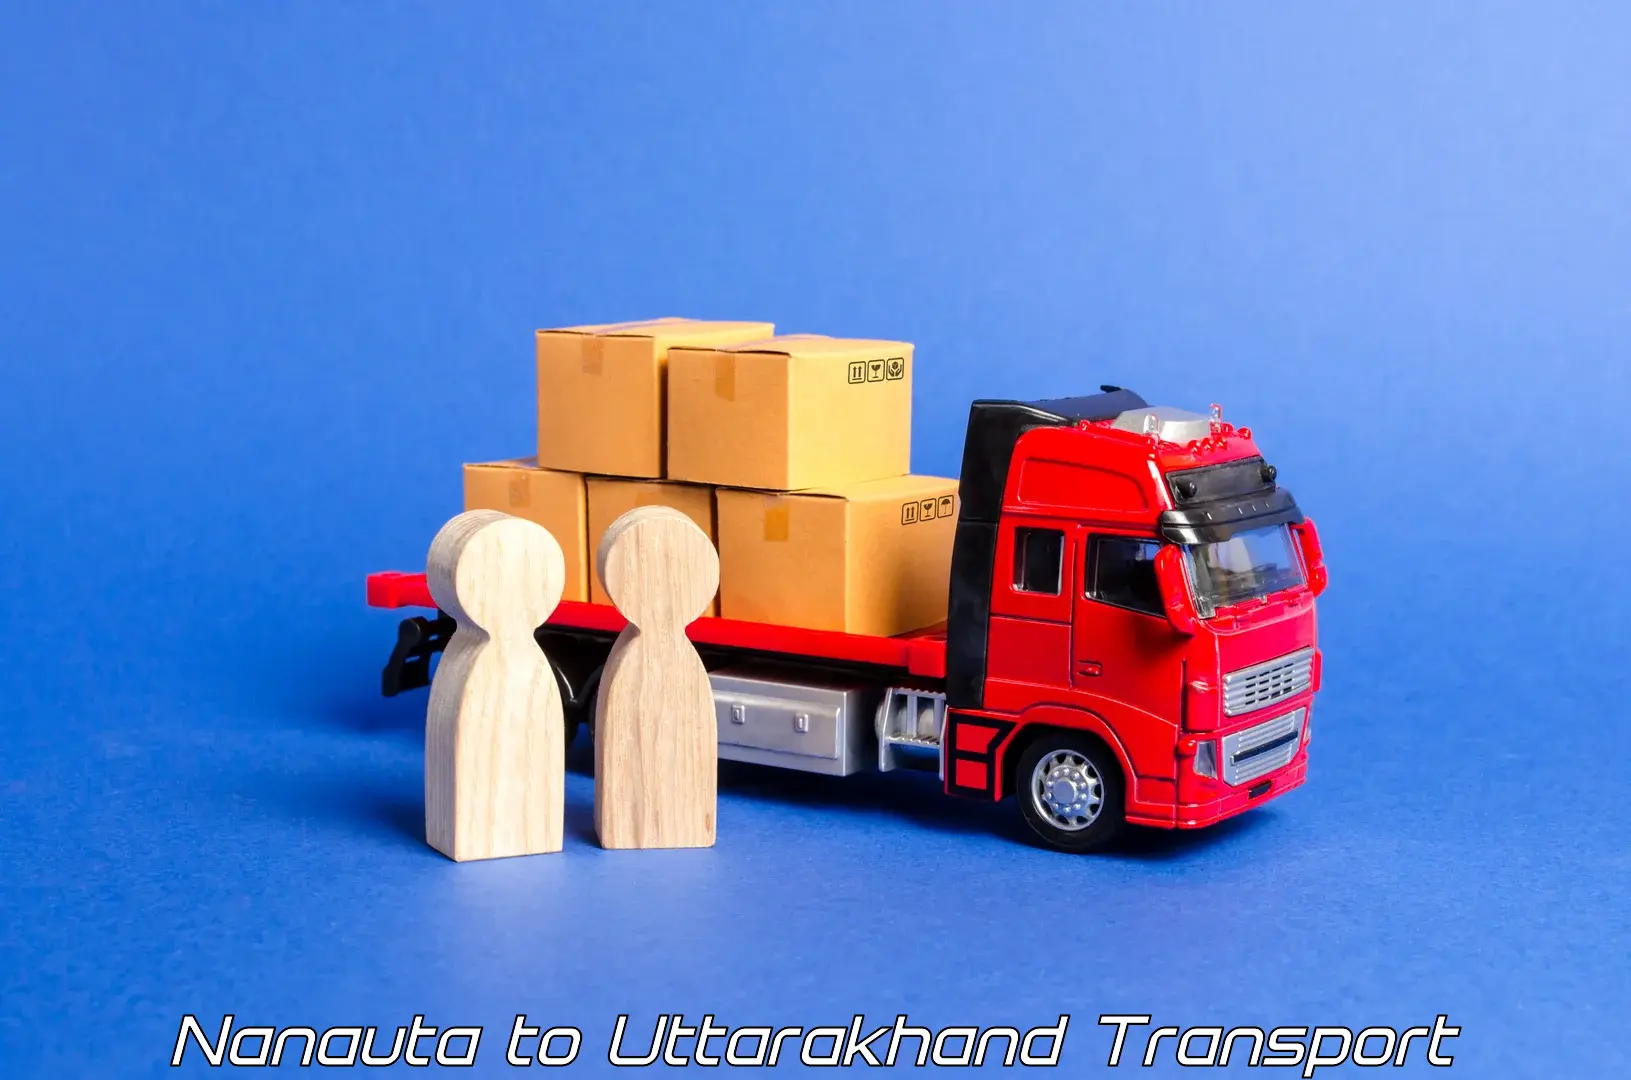 Interstate goods transport in Nanauta to Lansdowne